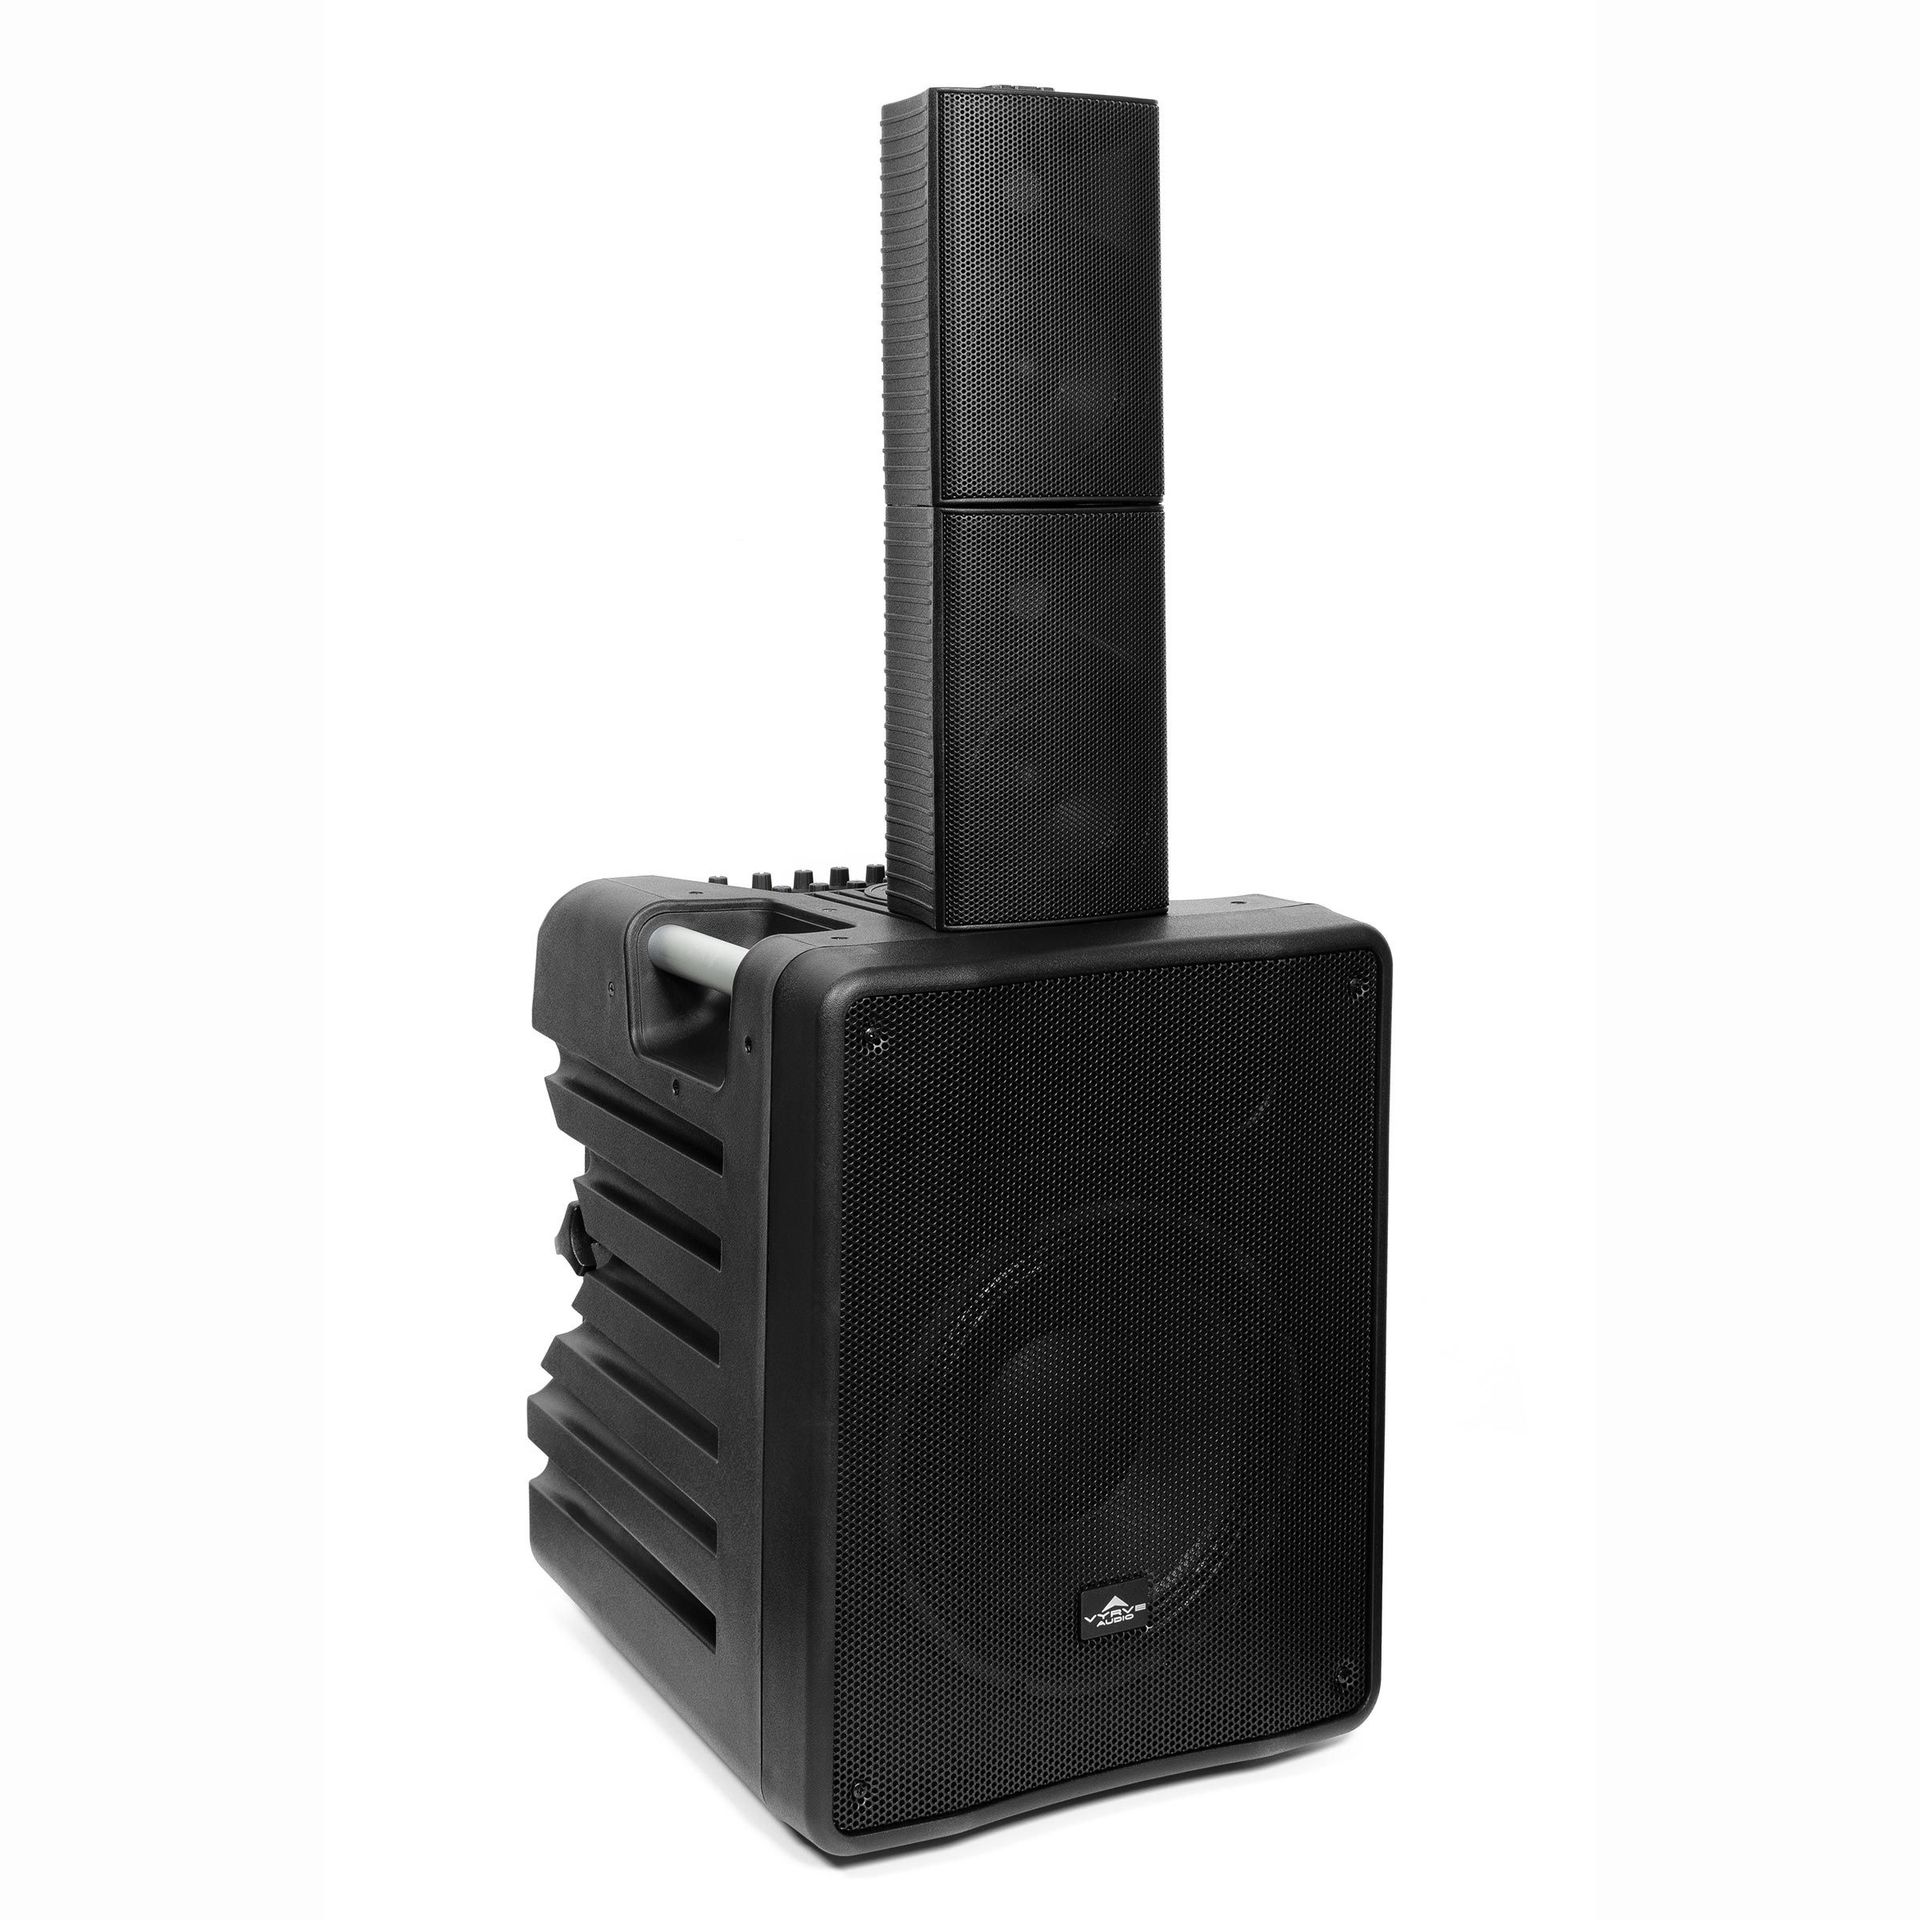 Vyrve Audio Mizar Aktives kompaktes PA-System mit Powermixer, Stative, Kabel